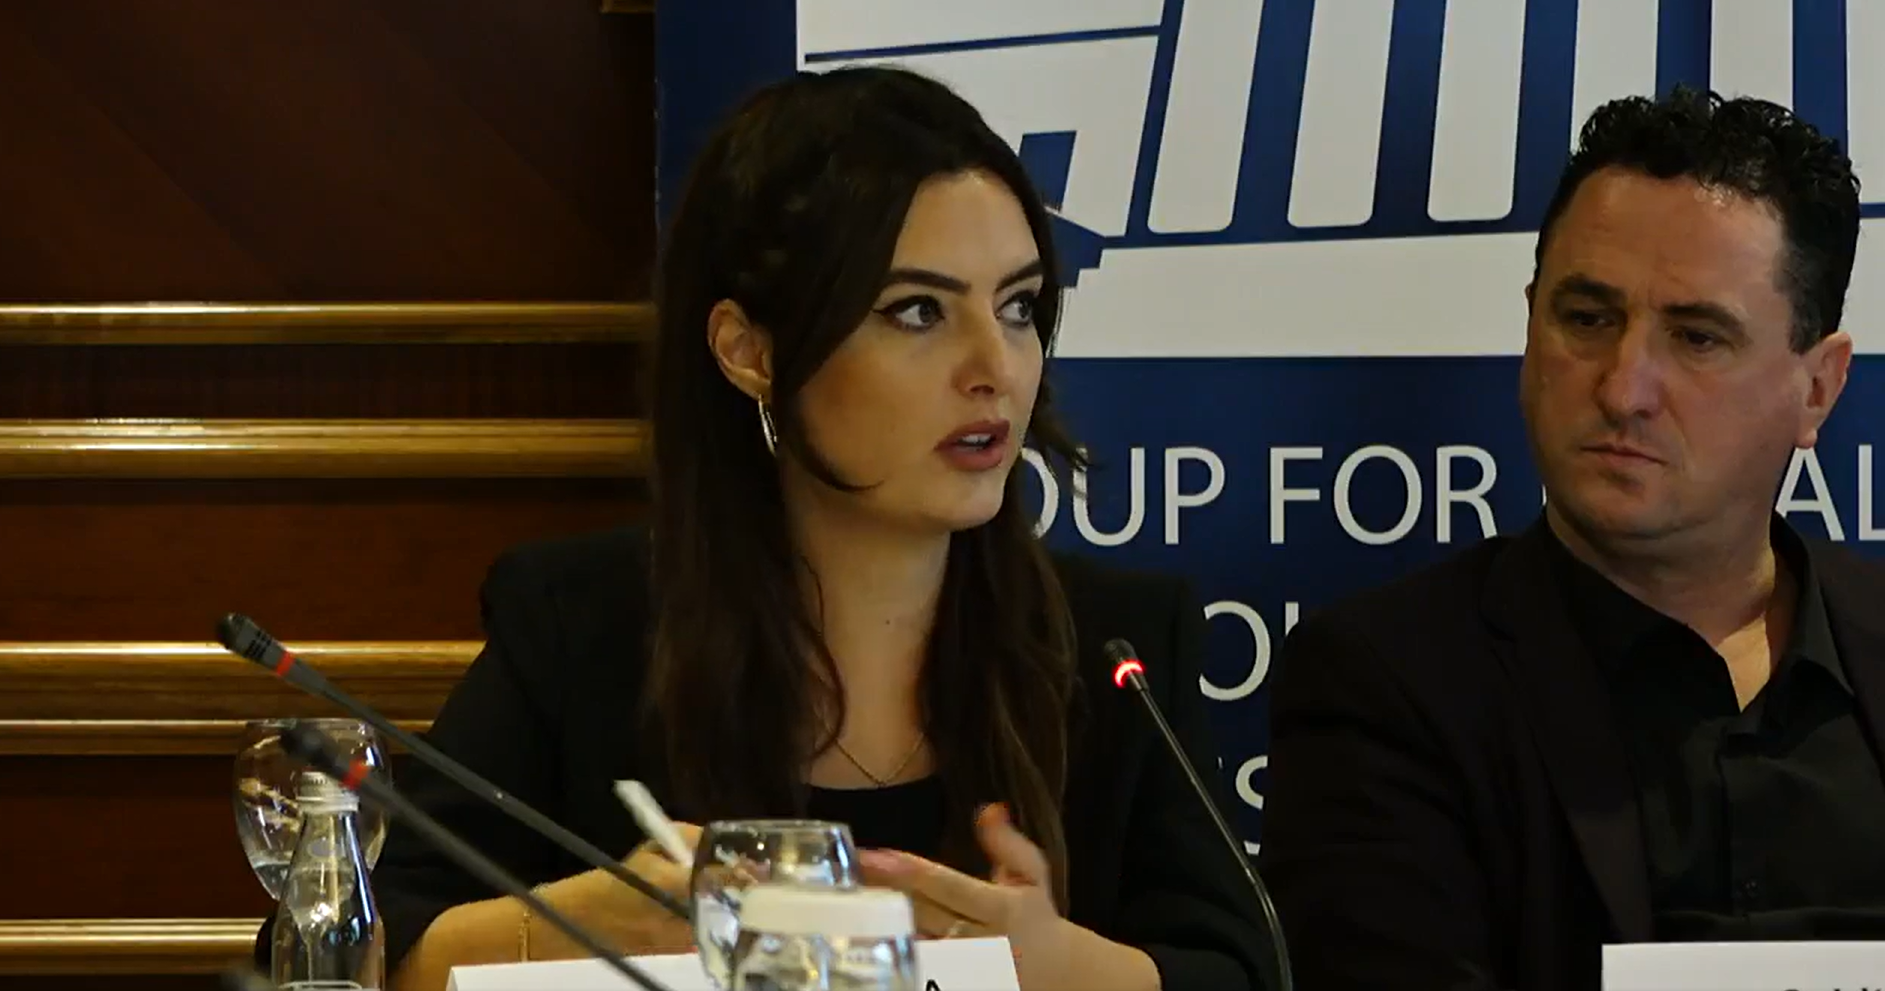 Koordinatorja e rasteve të dhunës në familje në Prokurorinë e Prishtinës shpalosë të arriturat dhe sfidat në trajtimin e këtyre rasteve gjatë tryezës së diskutimit e organizuar nga GLPS dhe CDF